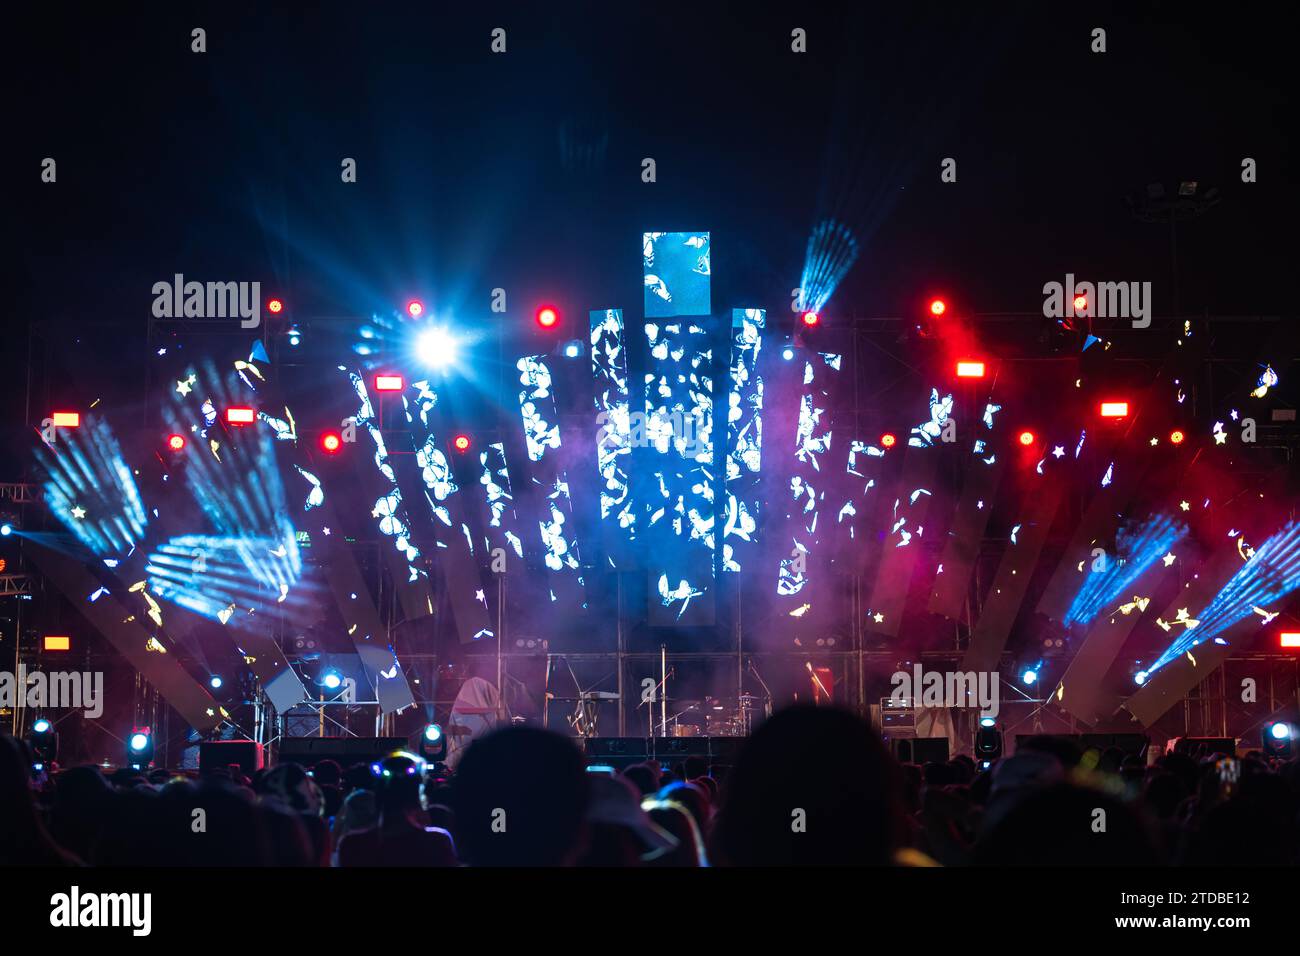 La nuit prend vie lors d'un festival de concert avec une foule jubilante devant une scène brillamment éclairée Banque D'Images